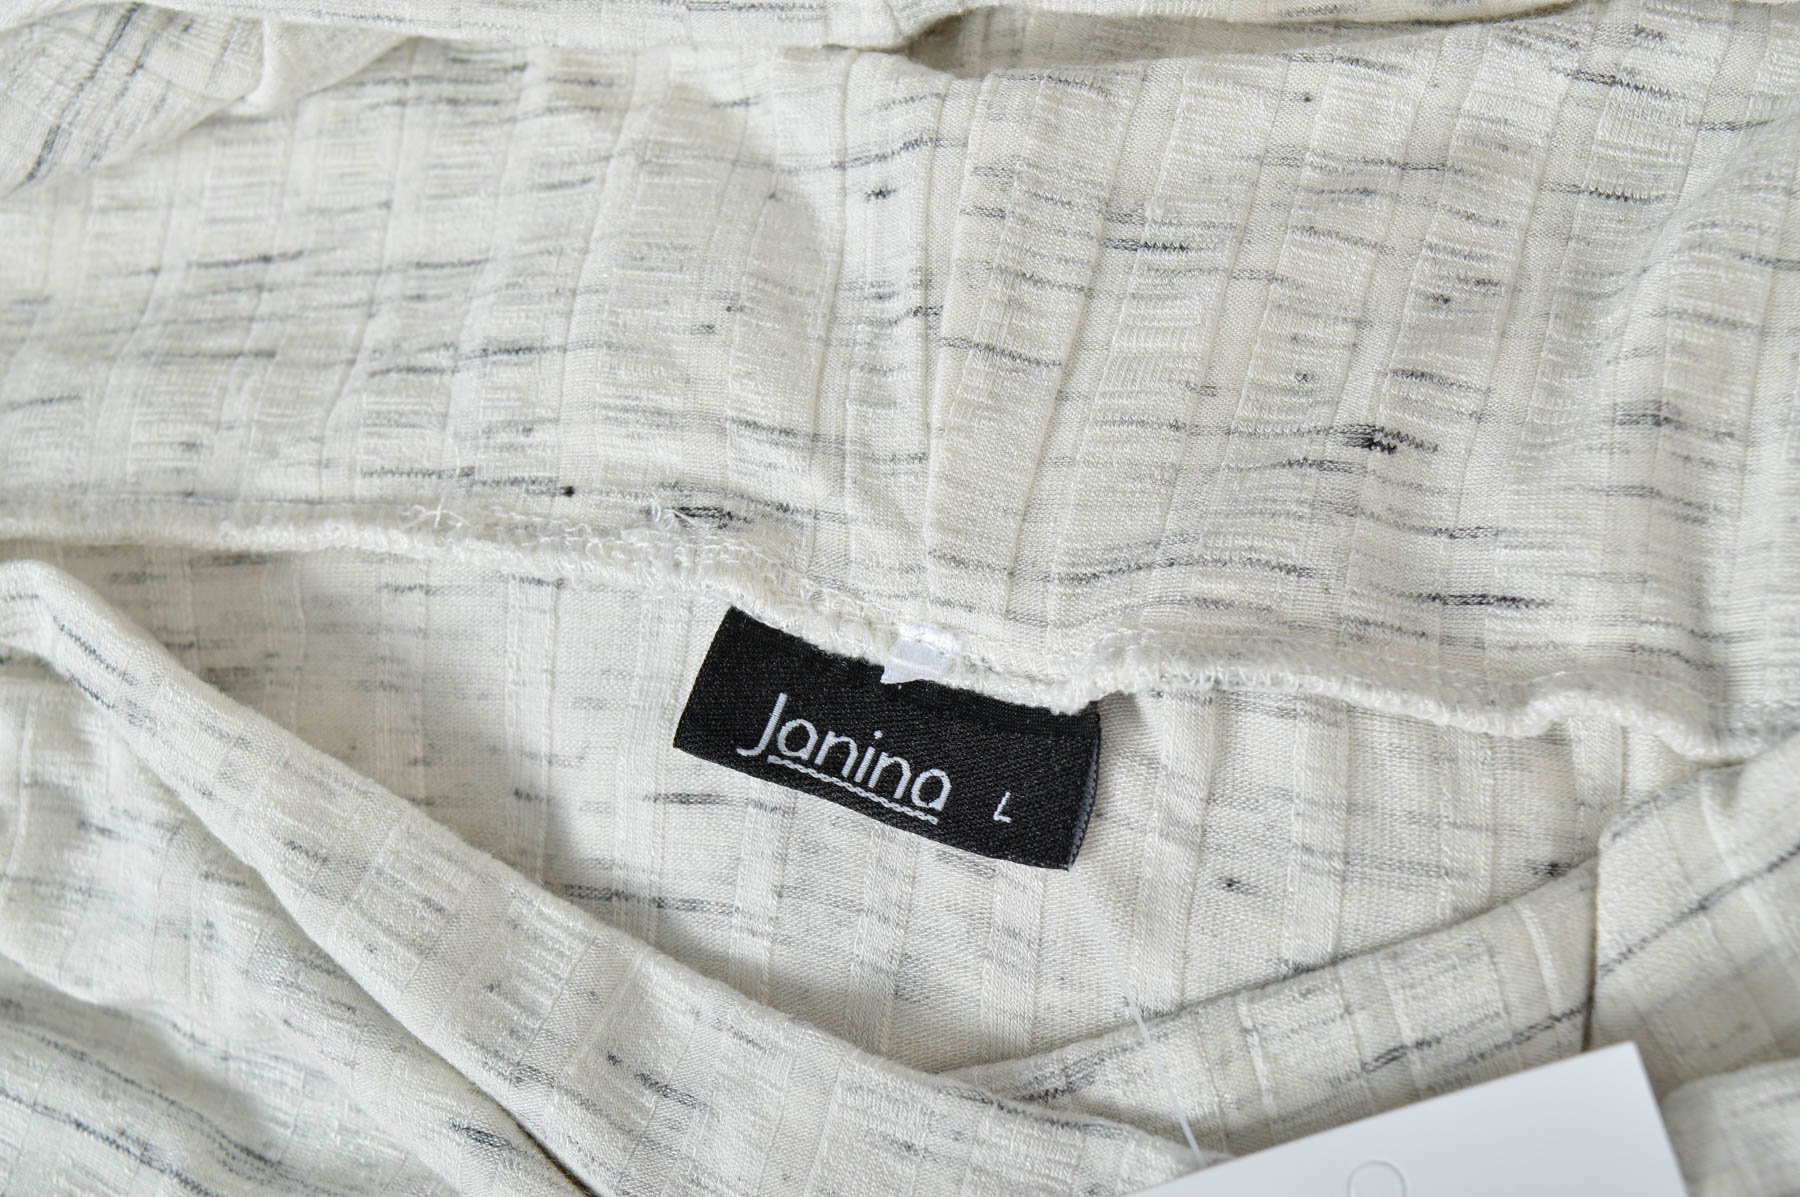 Γυναικεία μπλούζα - Janina - 2